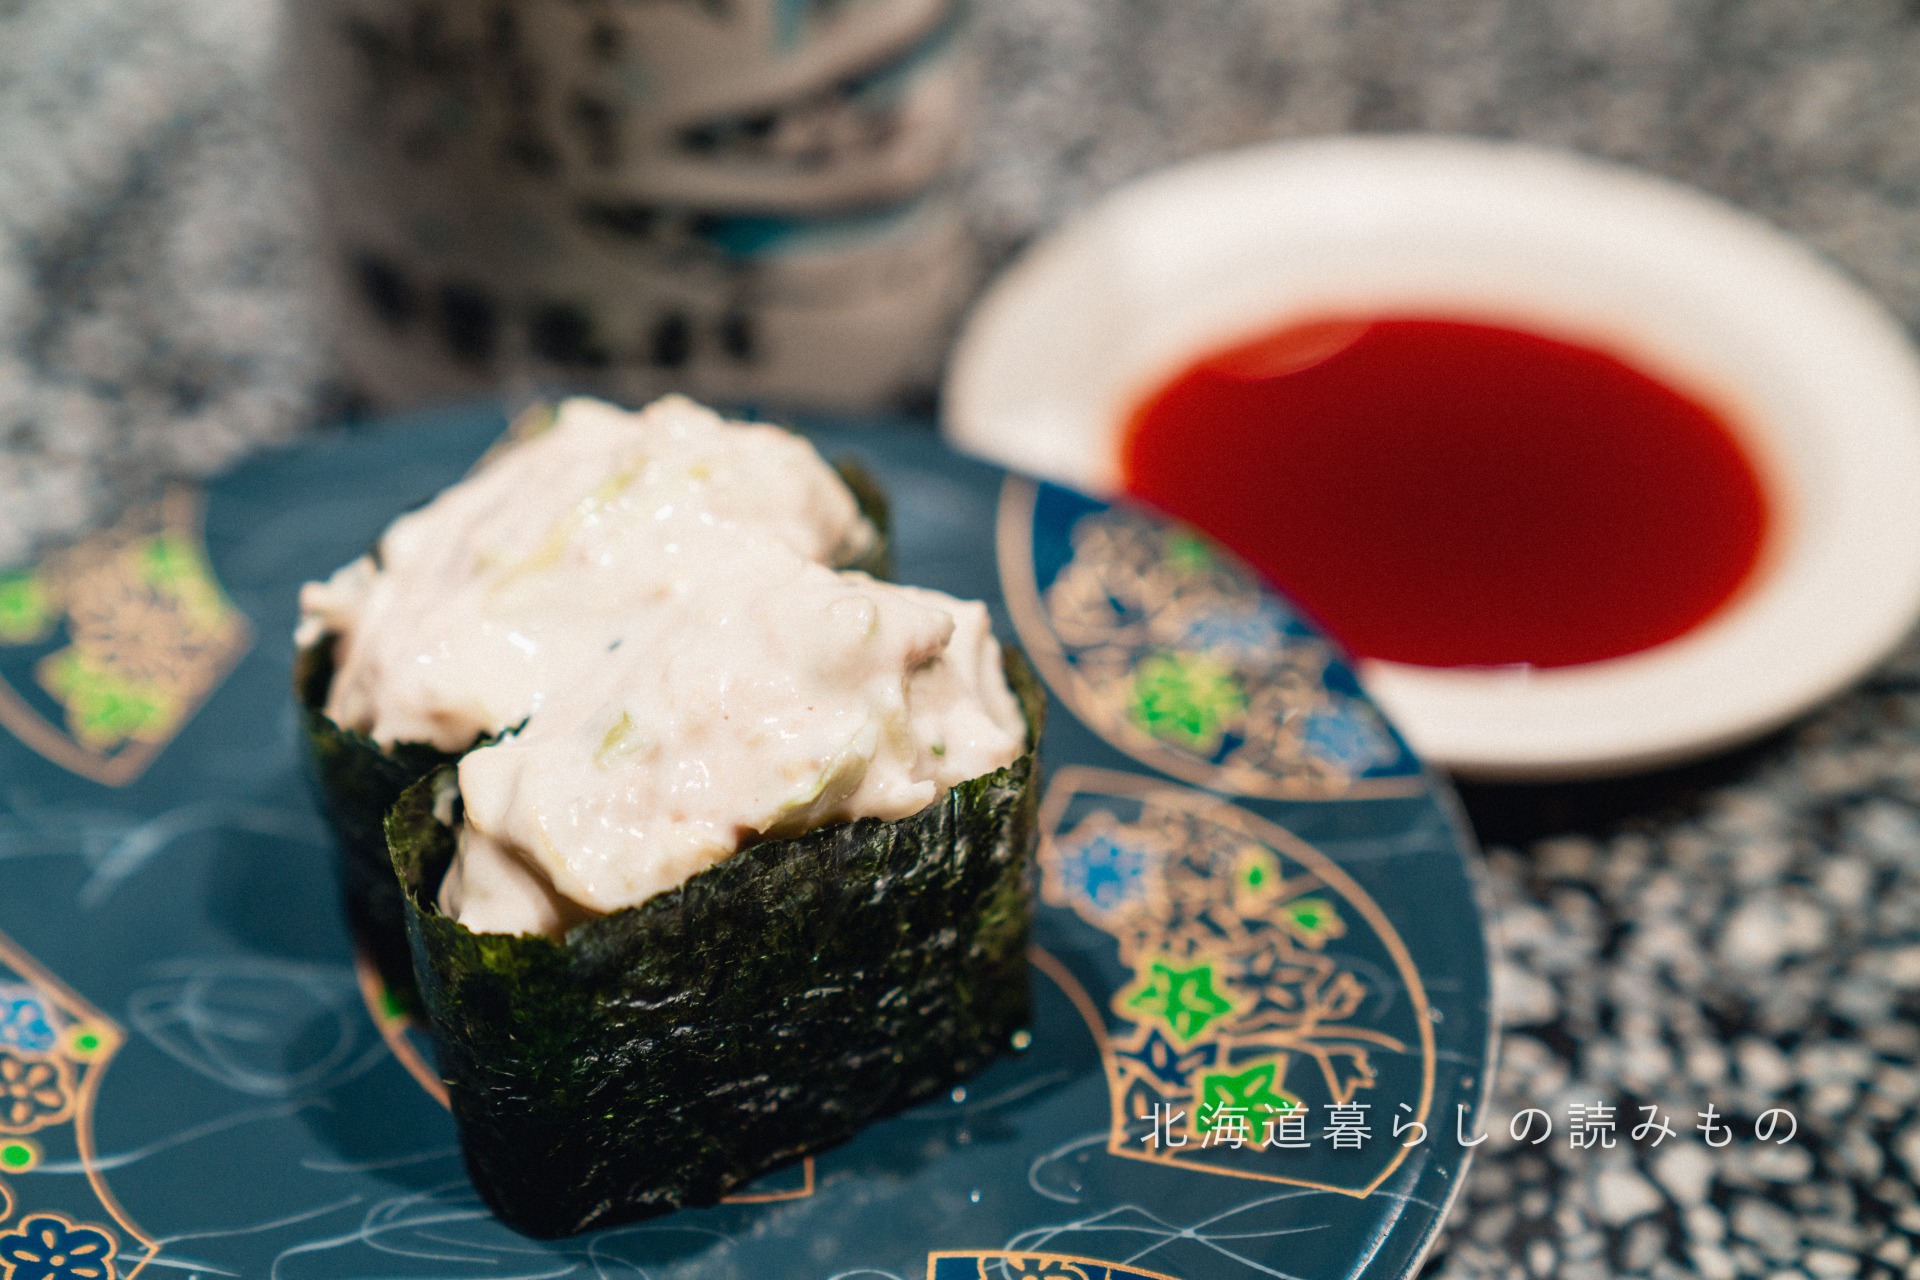 回転寿司 根室花まるのメニュー「ツナサラダ」の写真